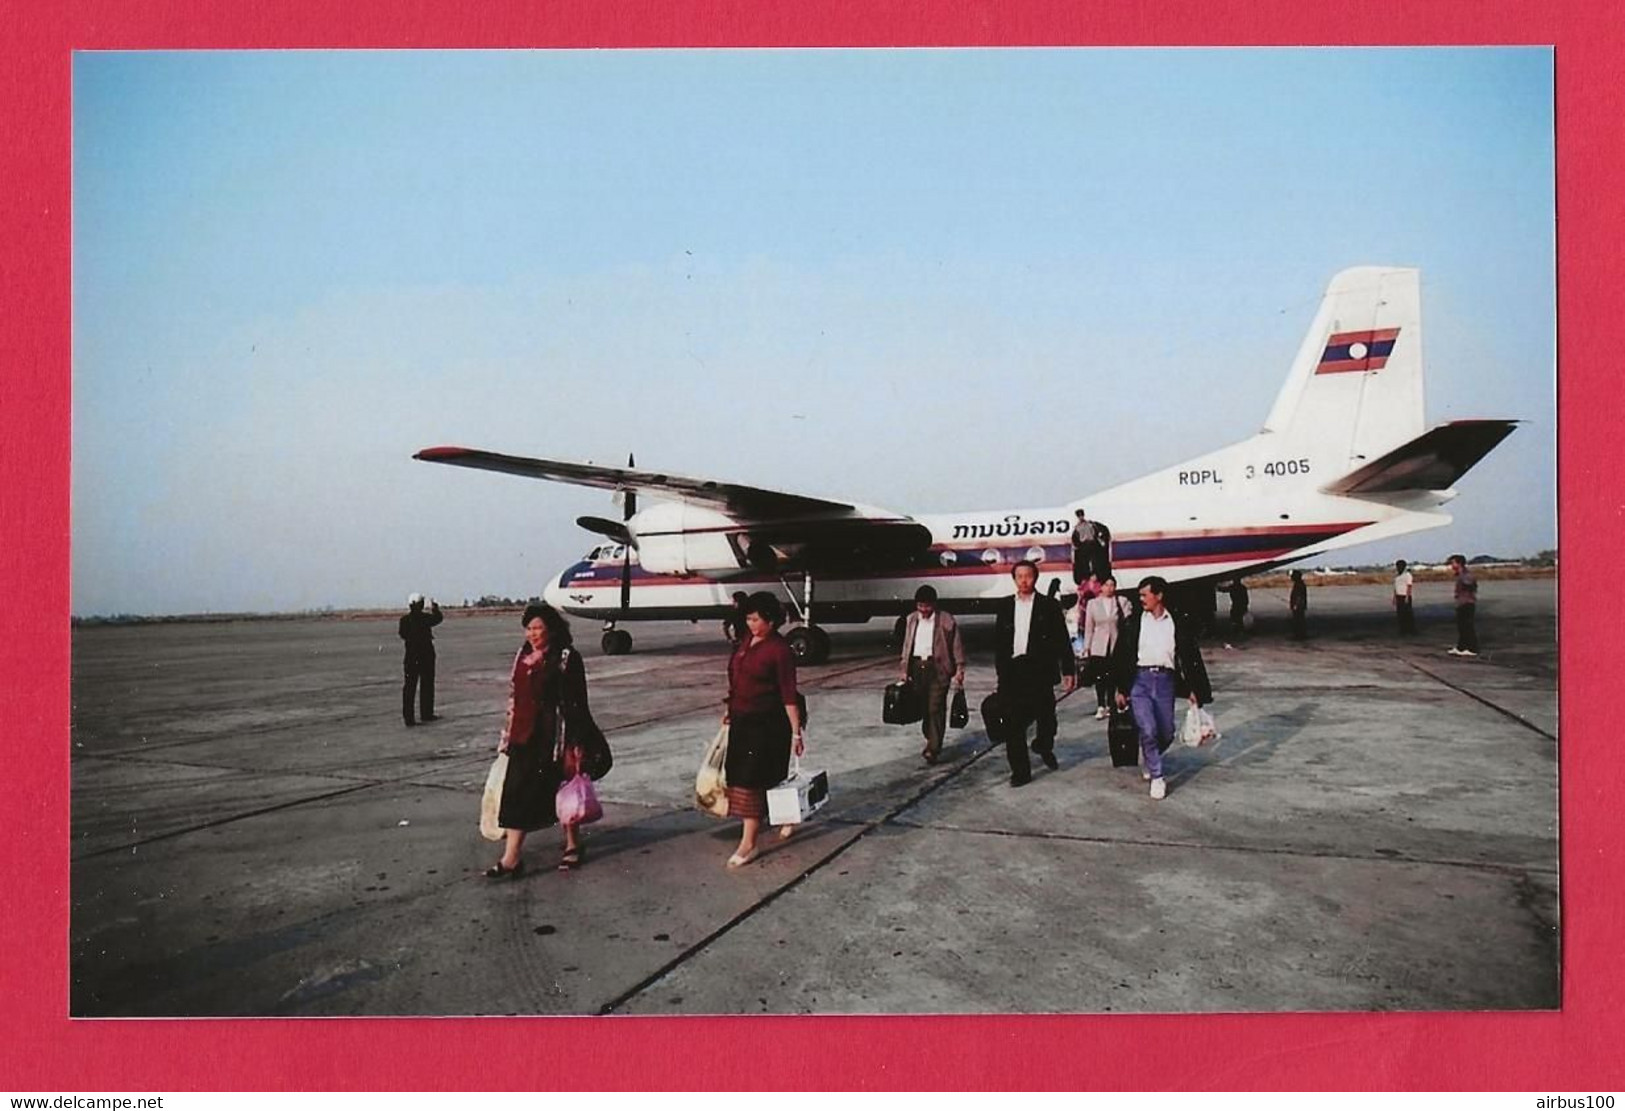 BELLE PHOTO REPRODUCTION AVION PLANE LAOS - LAO AIRLINES AVION XIAN Y-7 PASSAGERS SUR LE TARMAC - Aviation